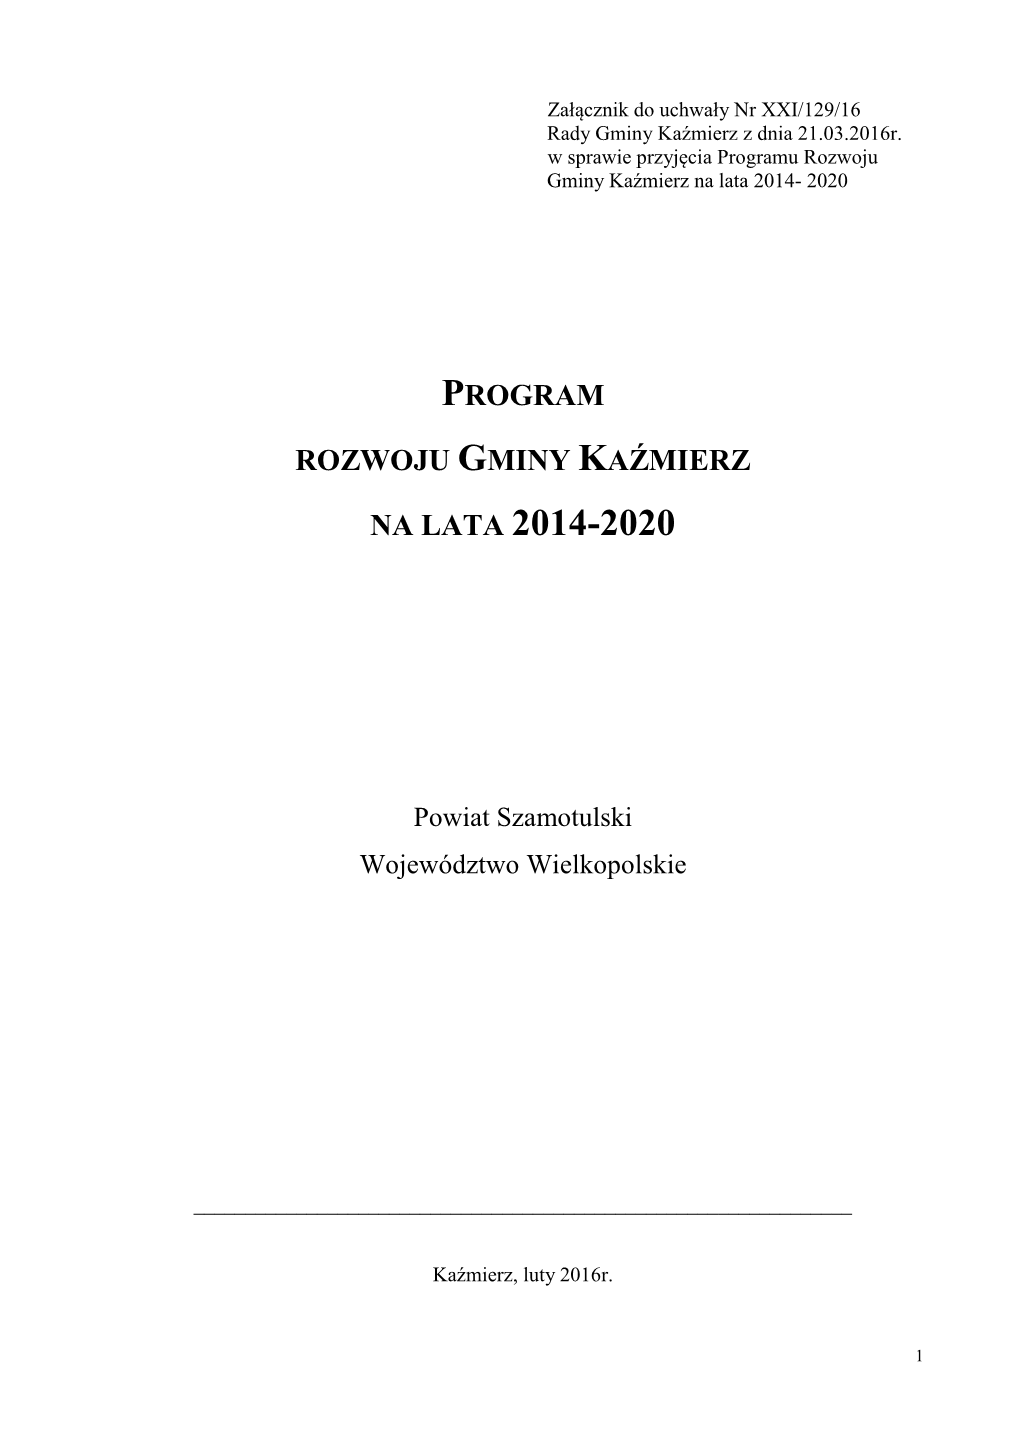 Program Rozwoju Gminy Kaźmierz